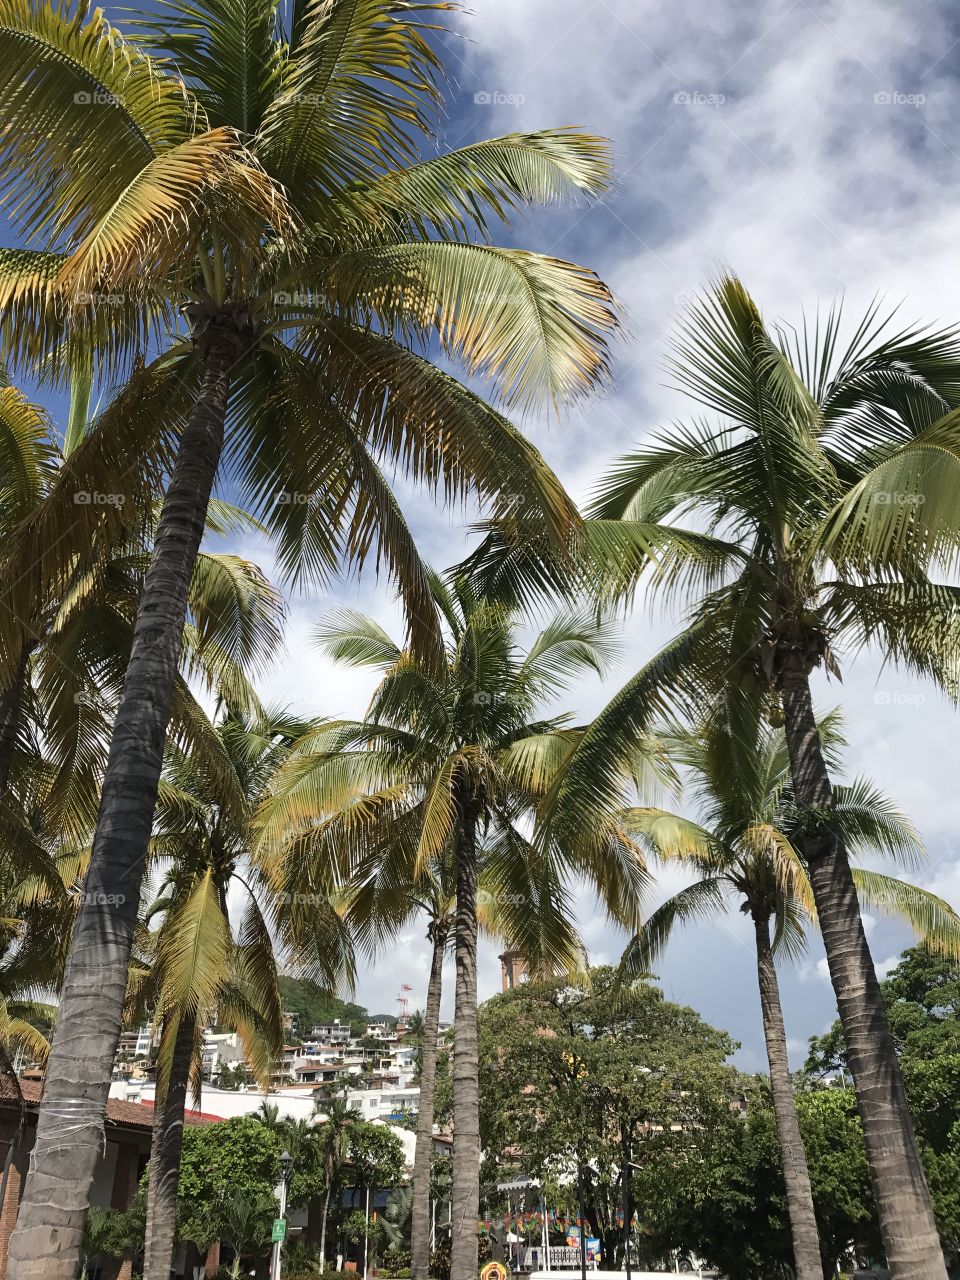 The Palms in Puerto Vallarta 